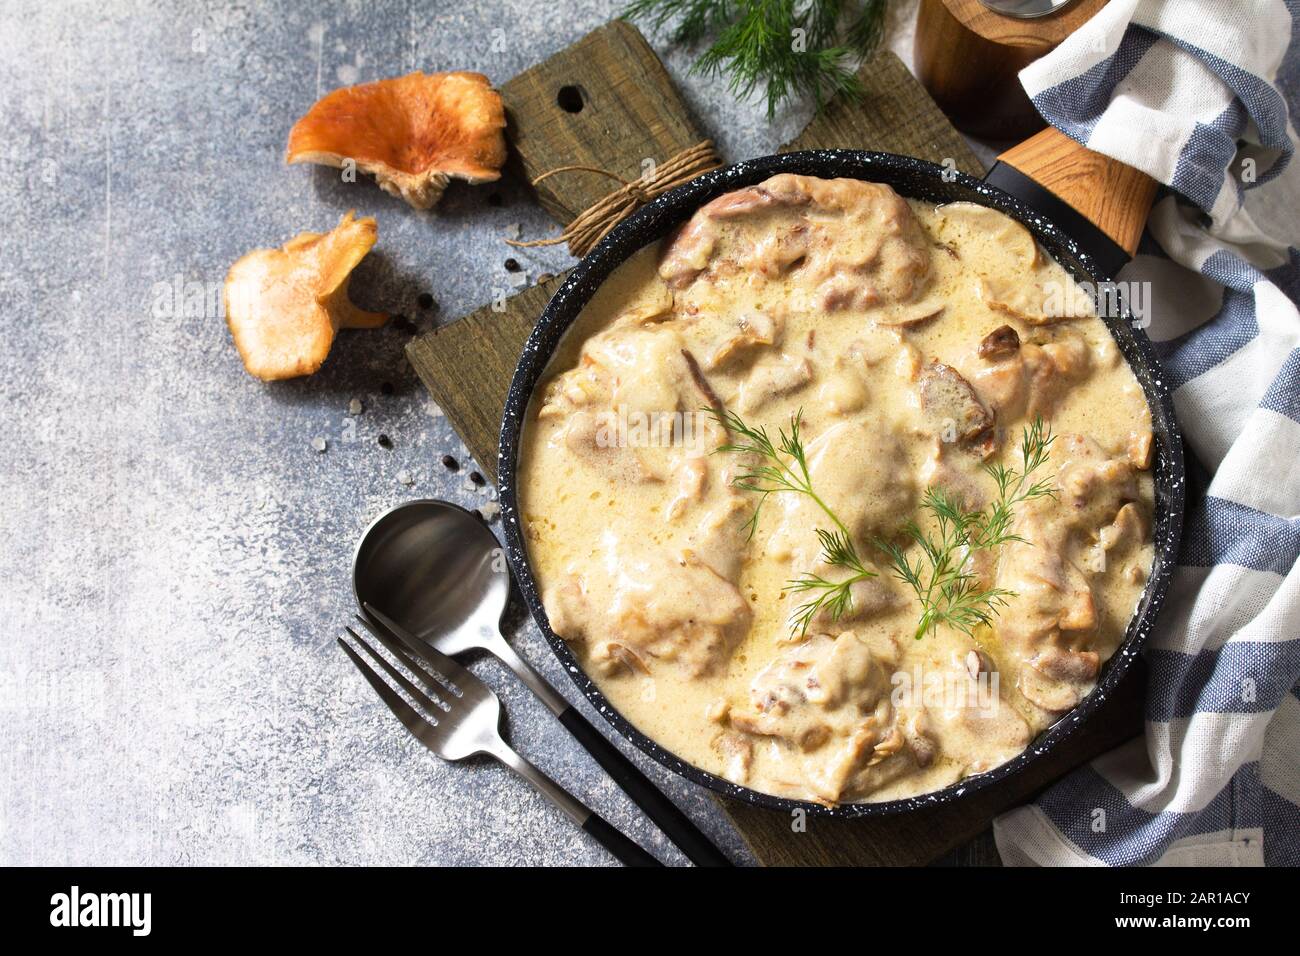 Fricasse - Cuisine Française. Poulet cuit dans une sauce crémeuse aux champignons dans une poêle sur fond de pierre légère. Espace de copie. Banque D'Images